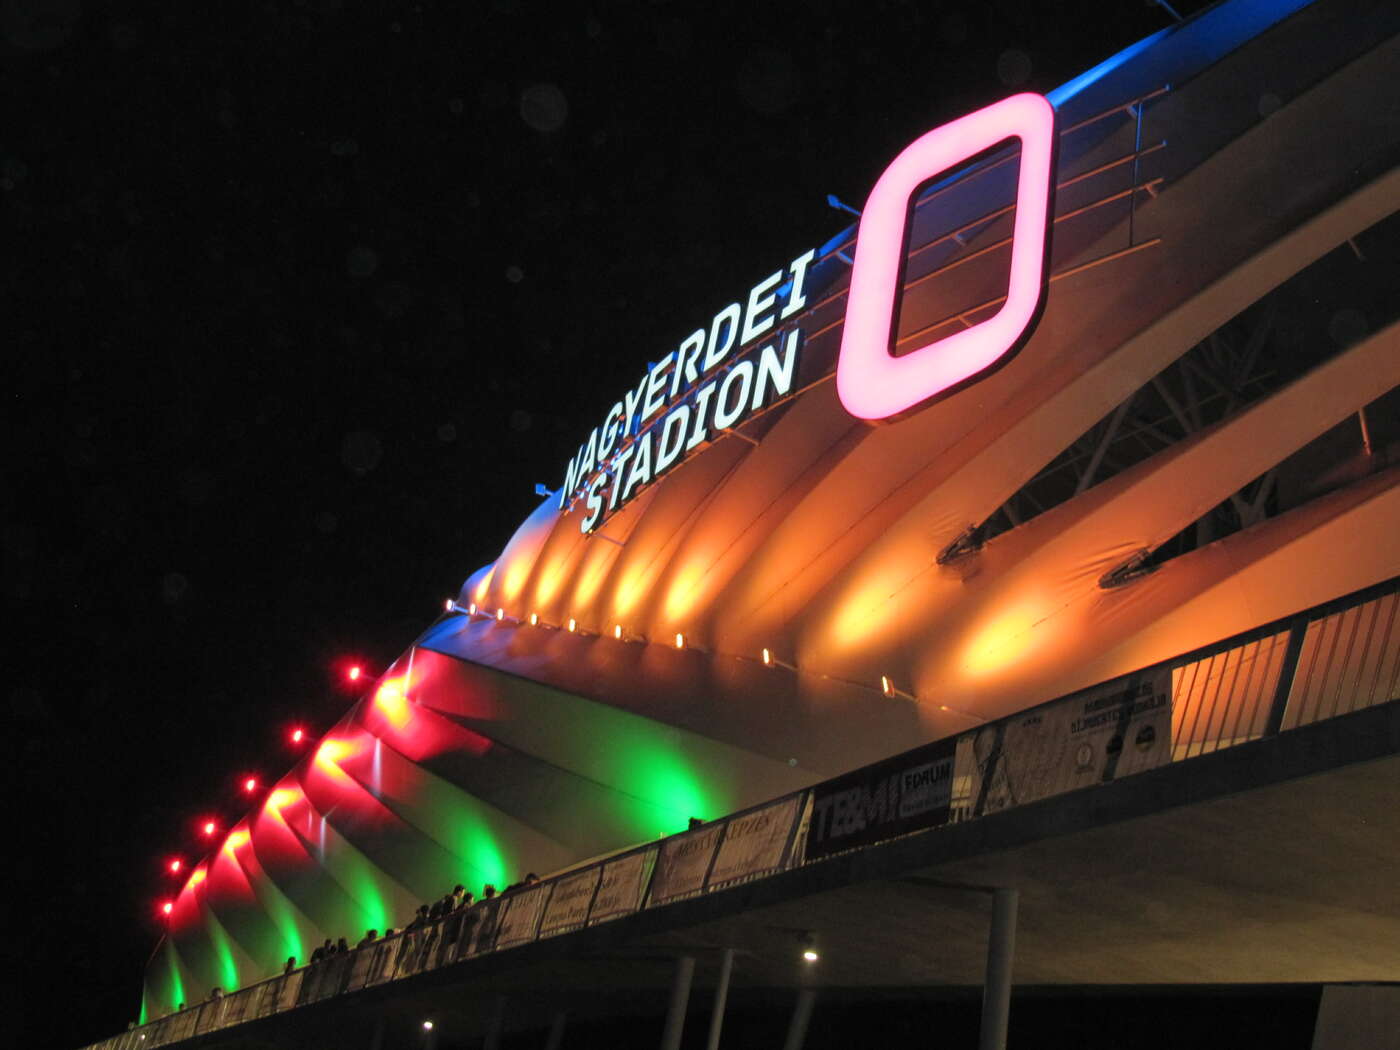 Das Stadion bei Nacht mit Beleuchtung